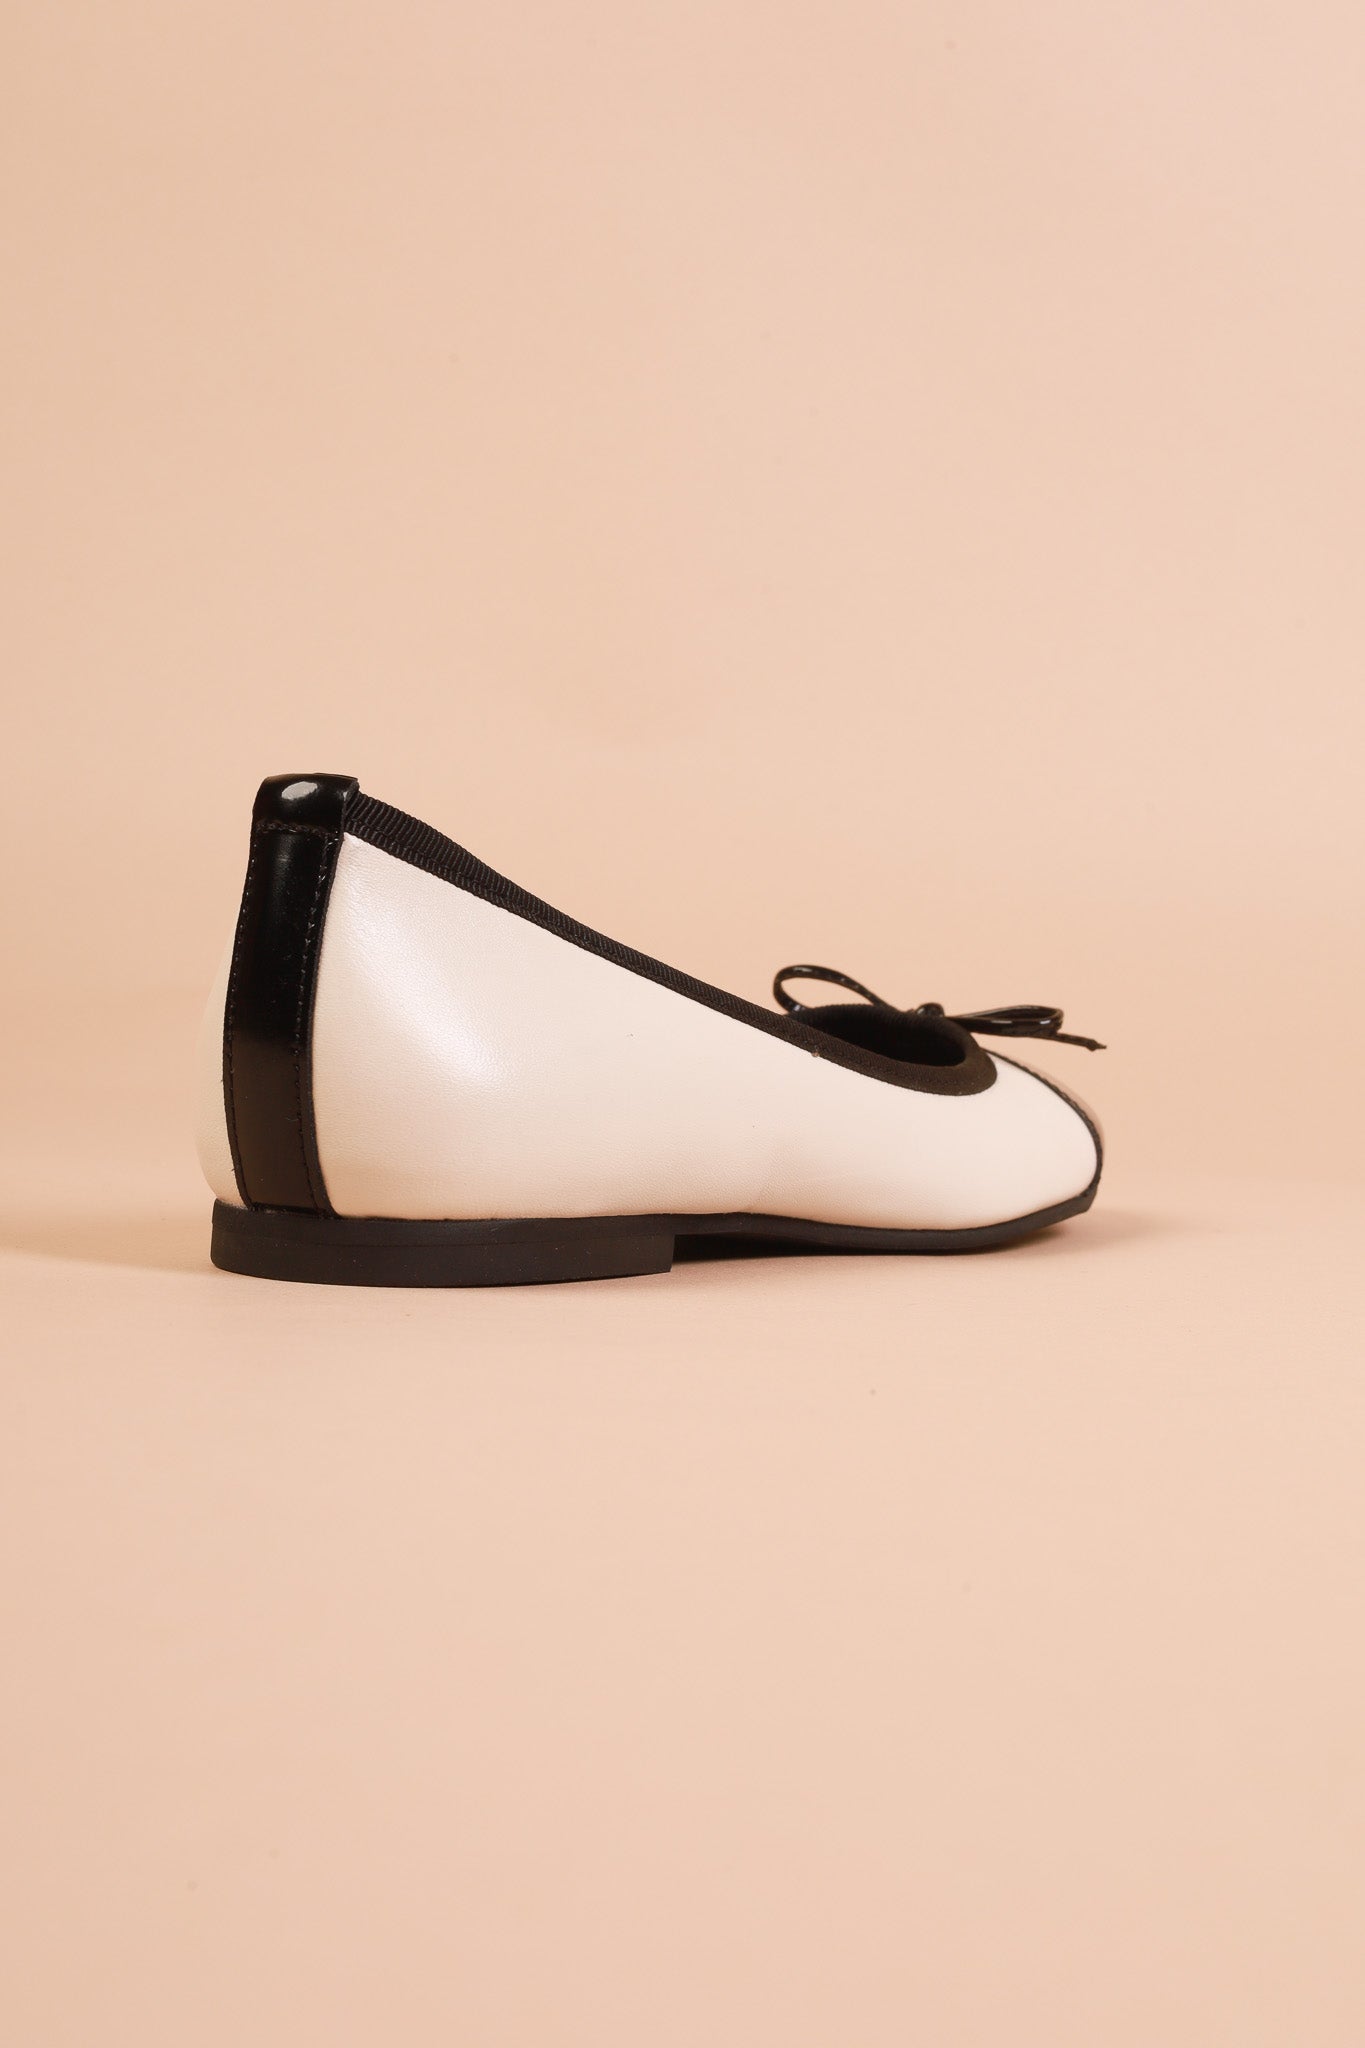 Cara Black & White KMB shoes